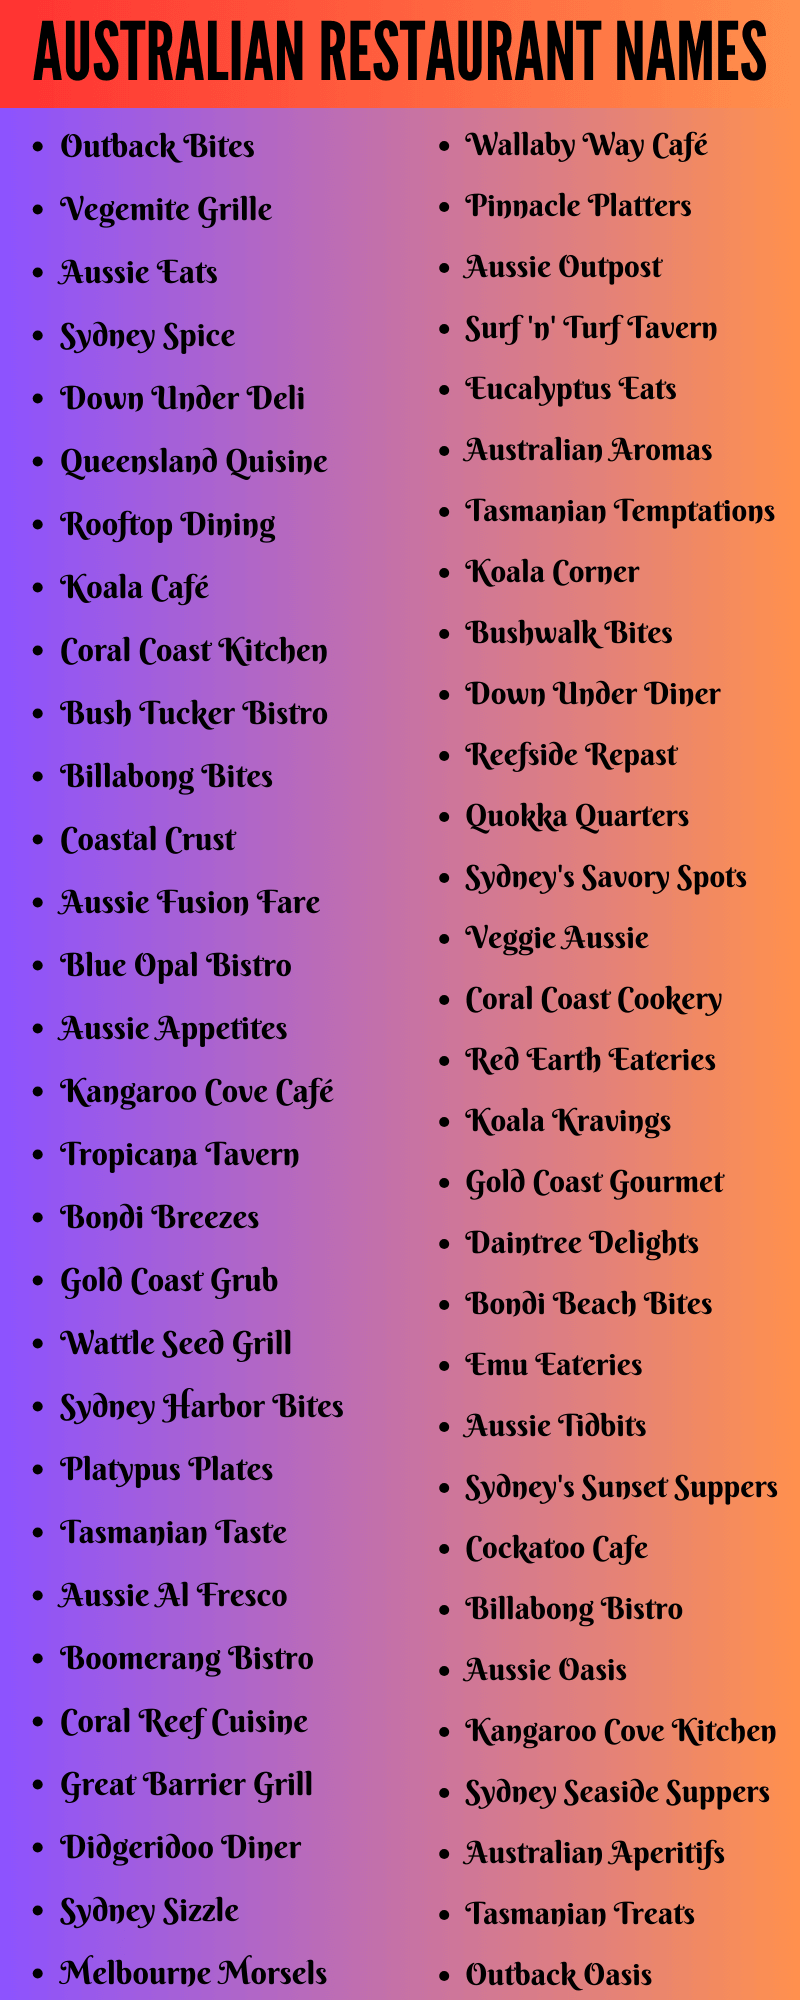 Australian Restaurant Names